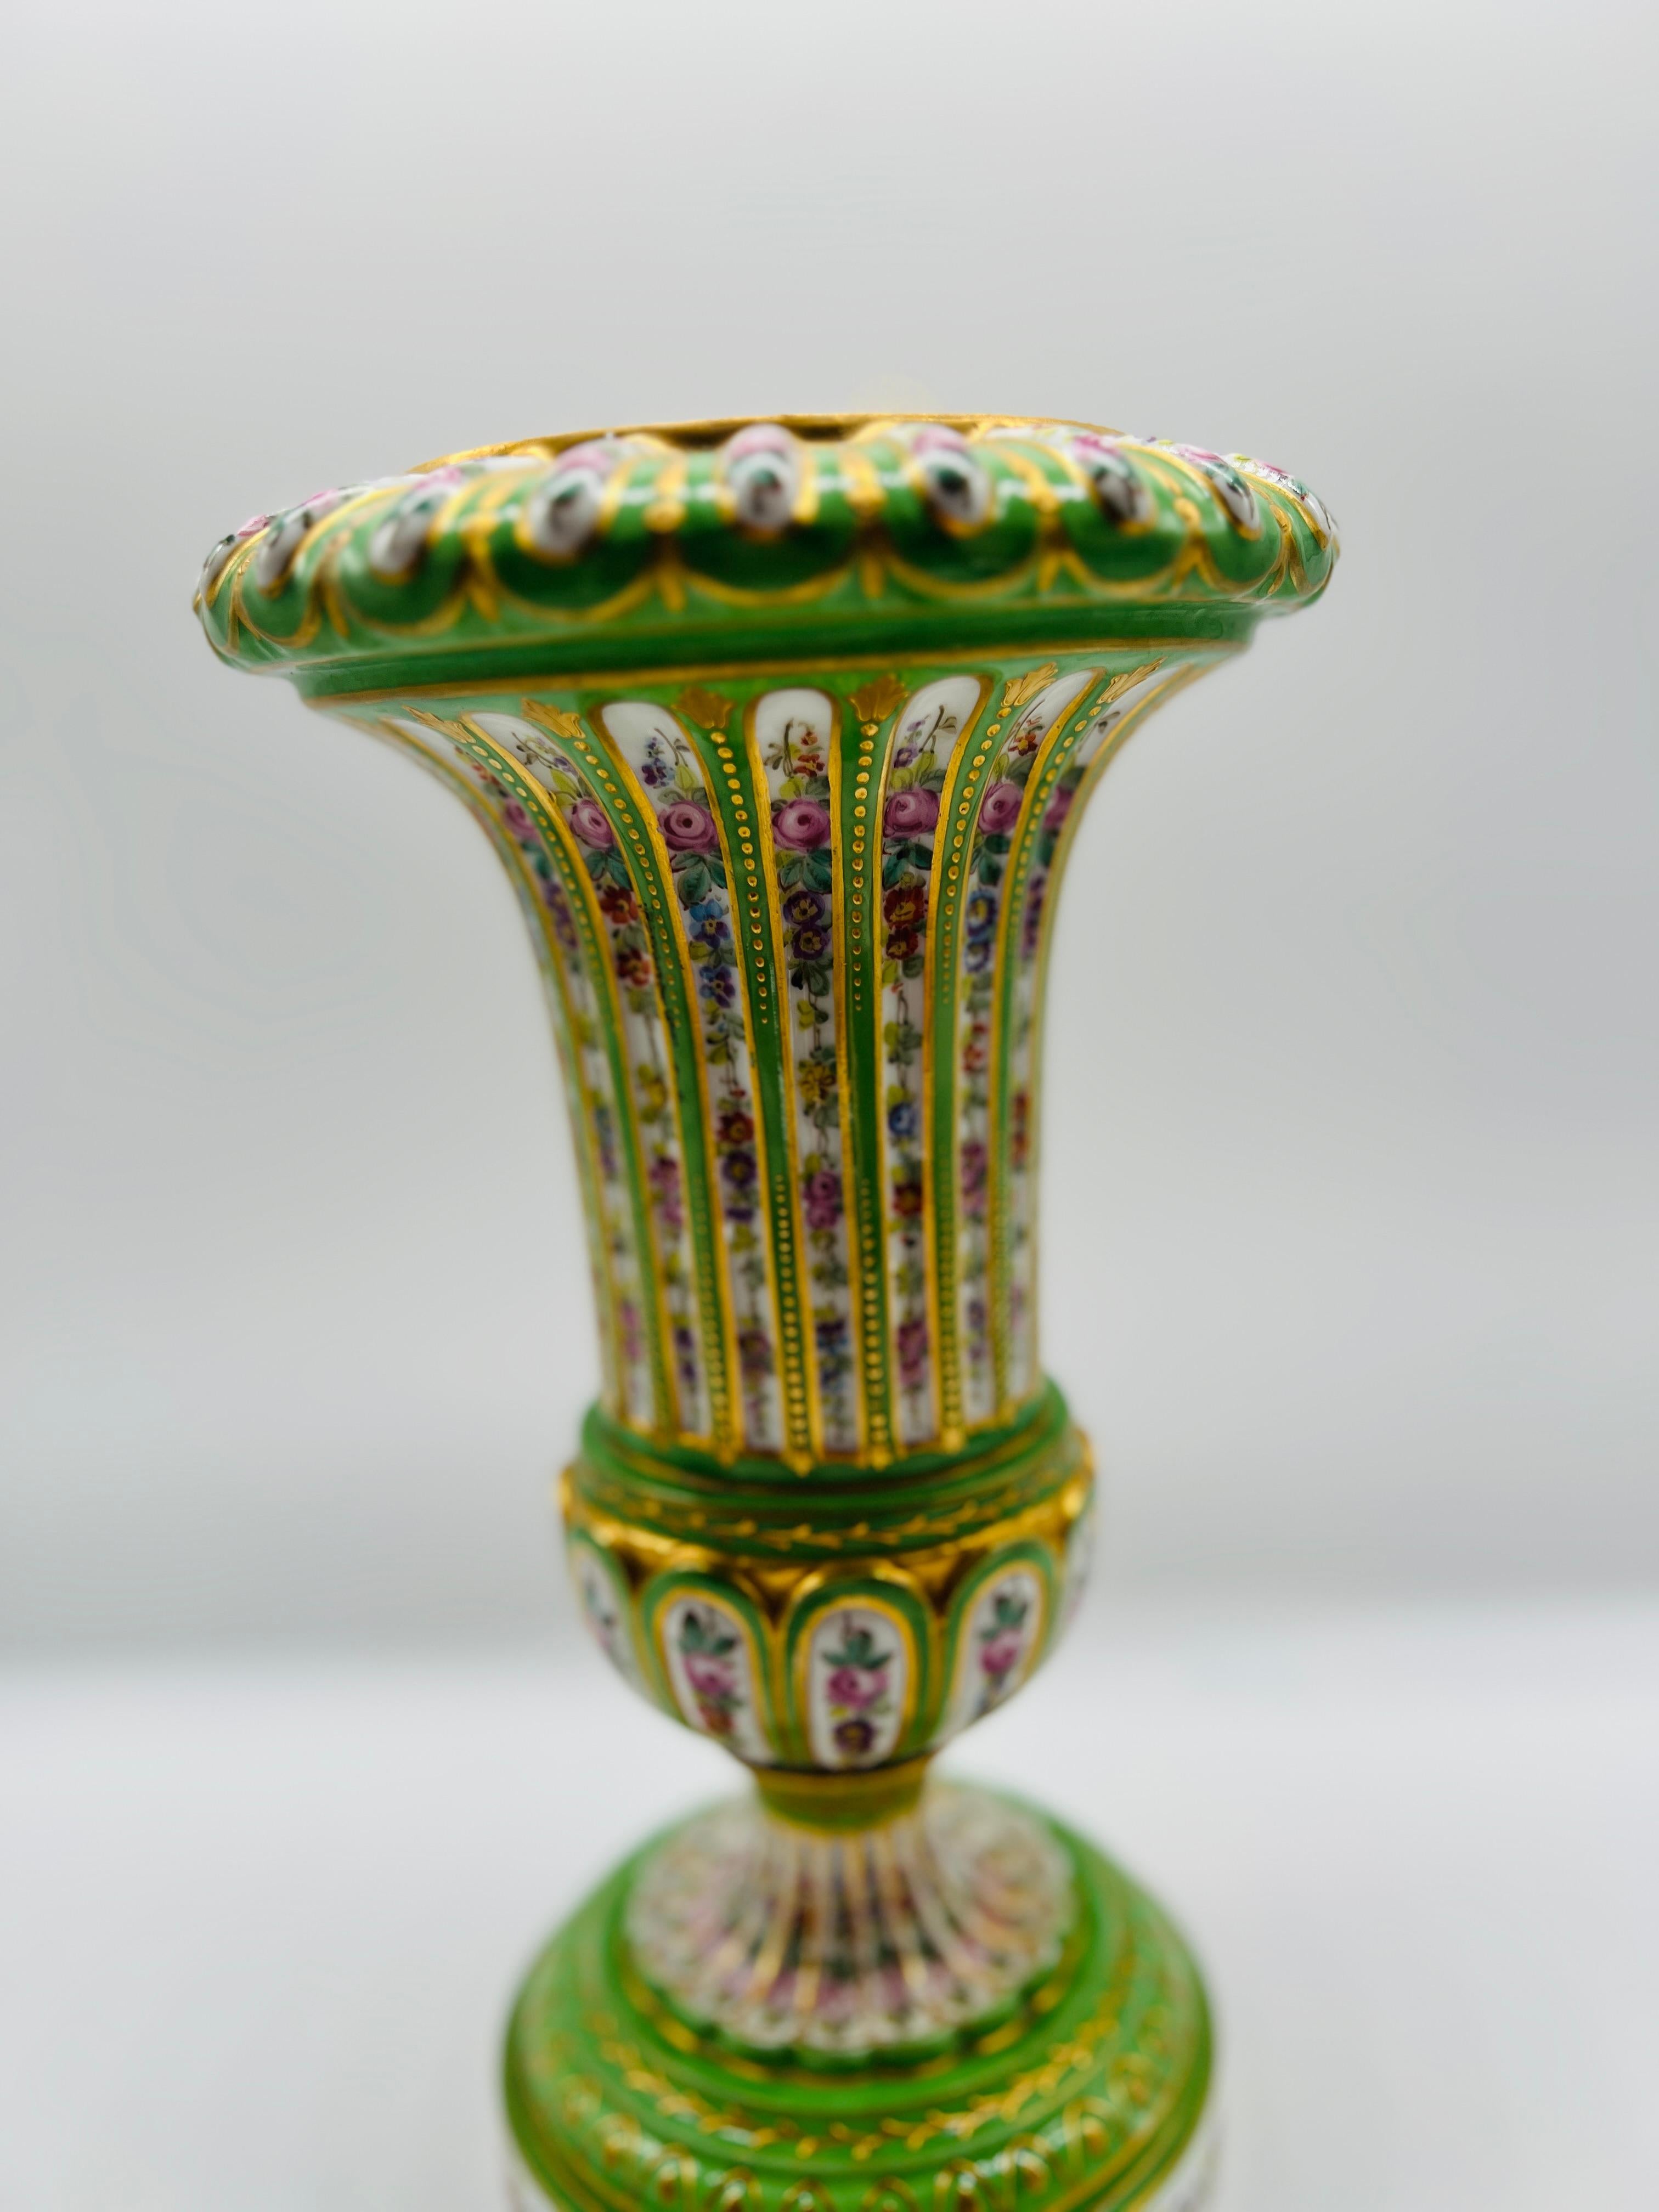 Antique French Sevres Porcelain Floral Enamel Decorated Vase C. 1770 For Sale 2